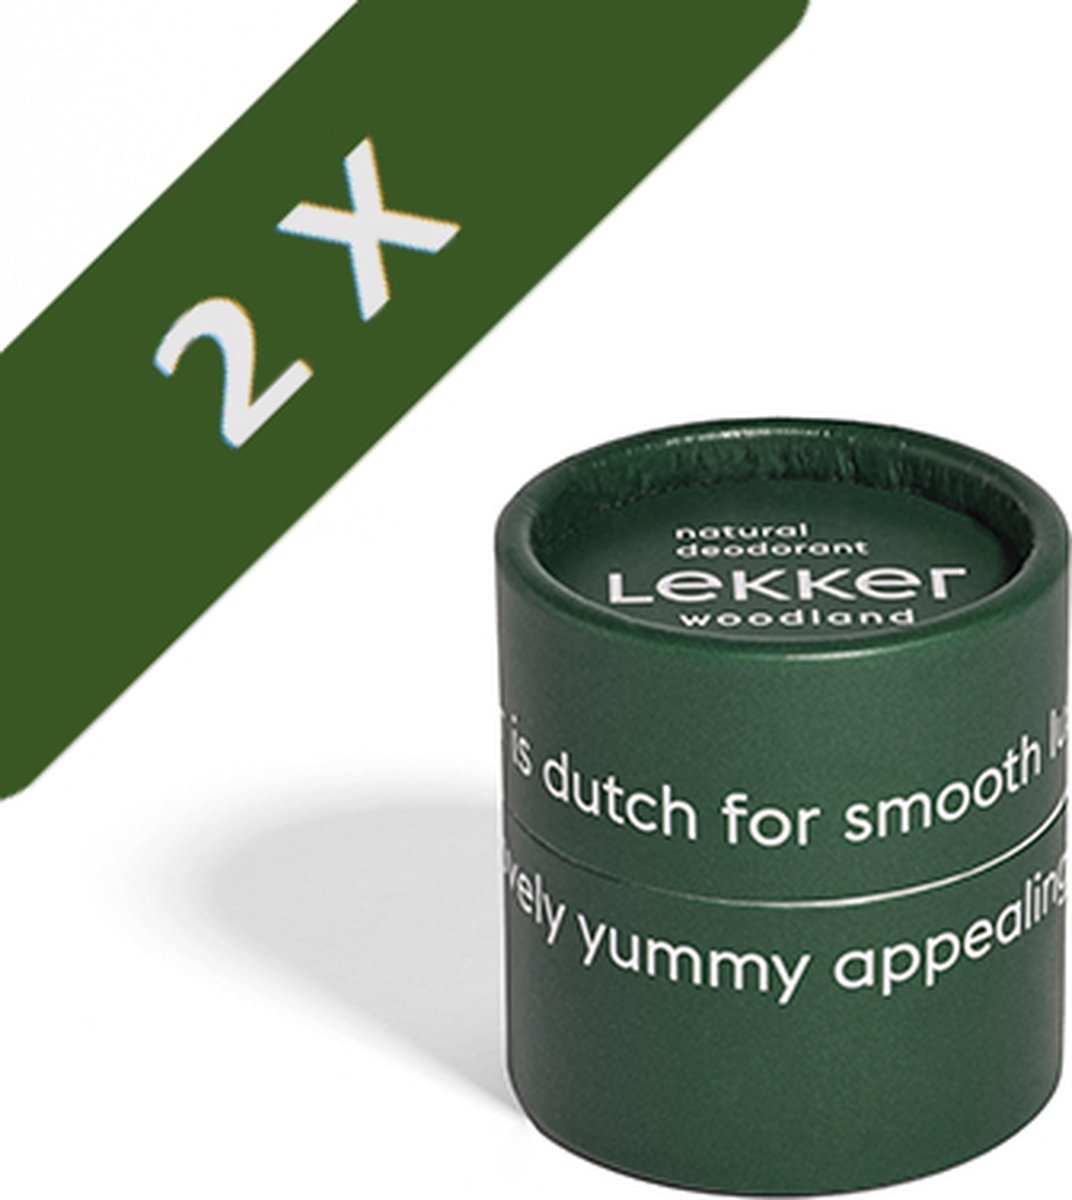 The Lekker Company - 2 x Deodorant - Woodland - 2 x 30 ml - 60 ml - plastic vrij - half jaar lang gebruik